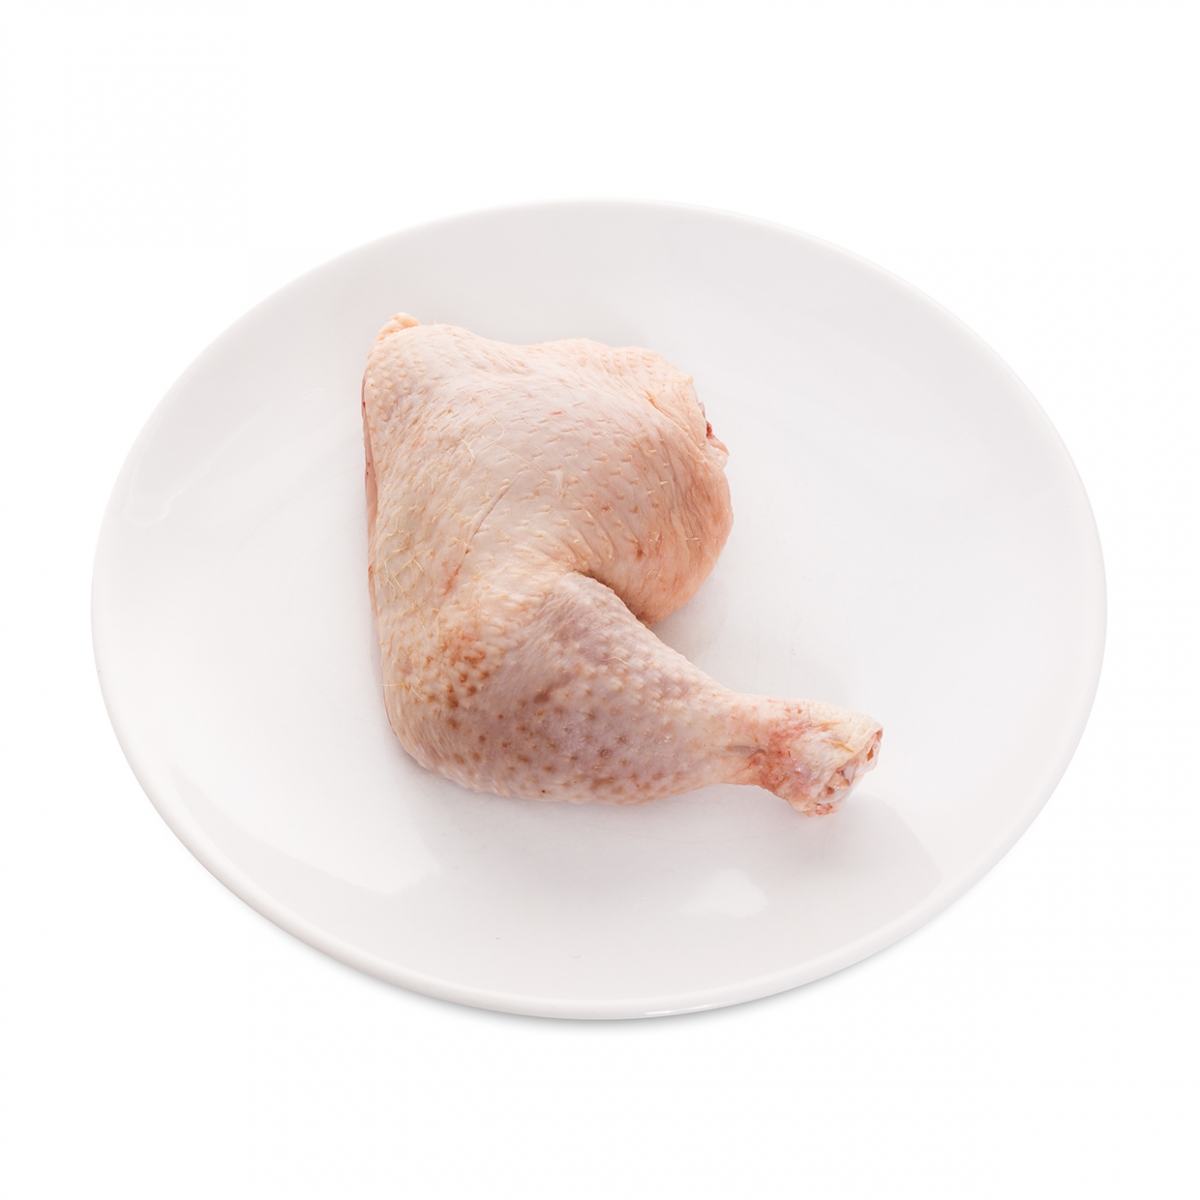 Imagen en la que se ve una pata de pollo